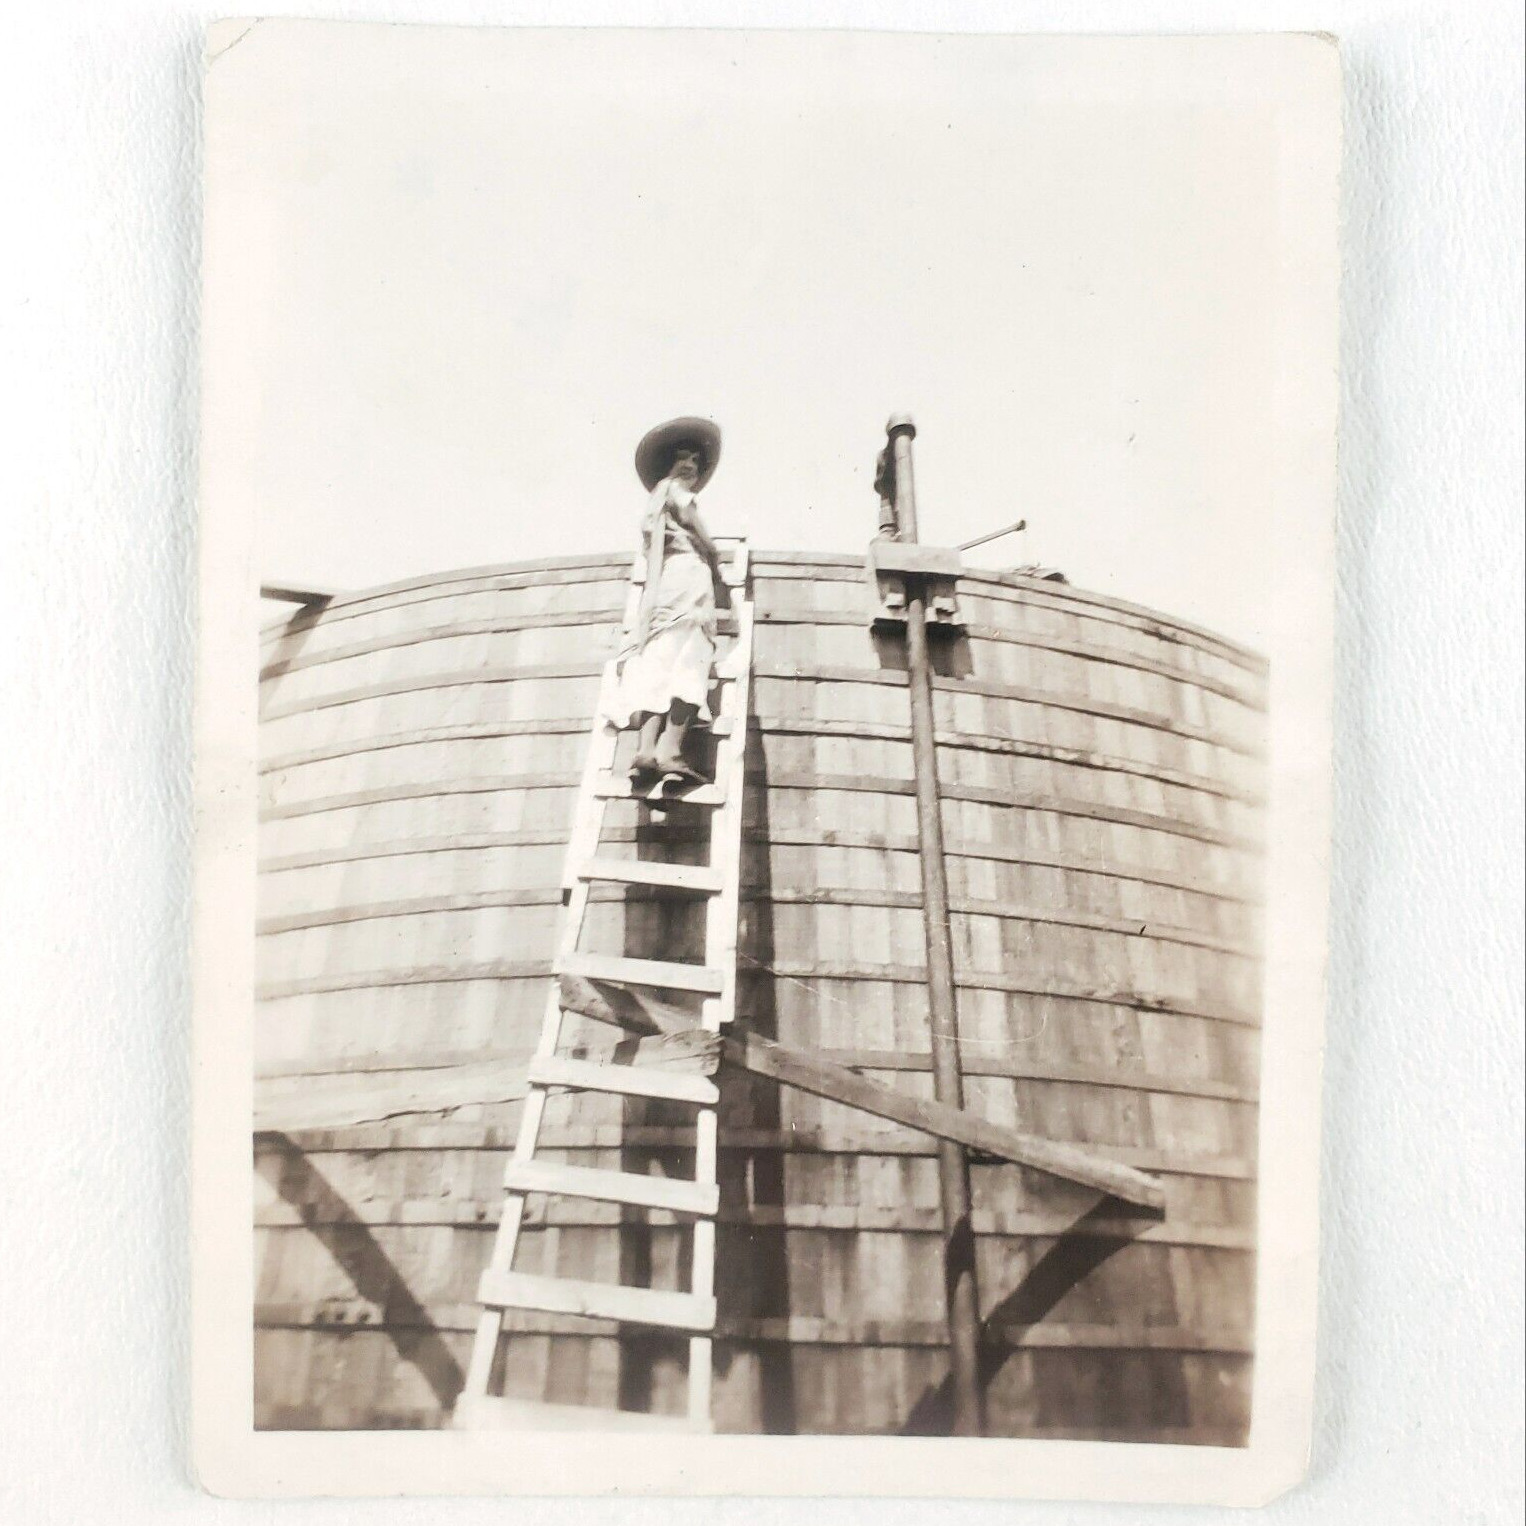 Woman Climbing Oil Tank Photo 1920s Burbank Field Webb City Oklahoma A1907